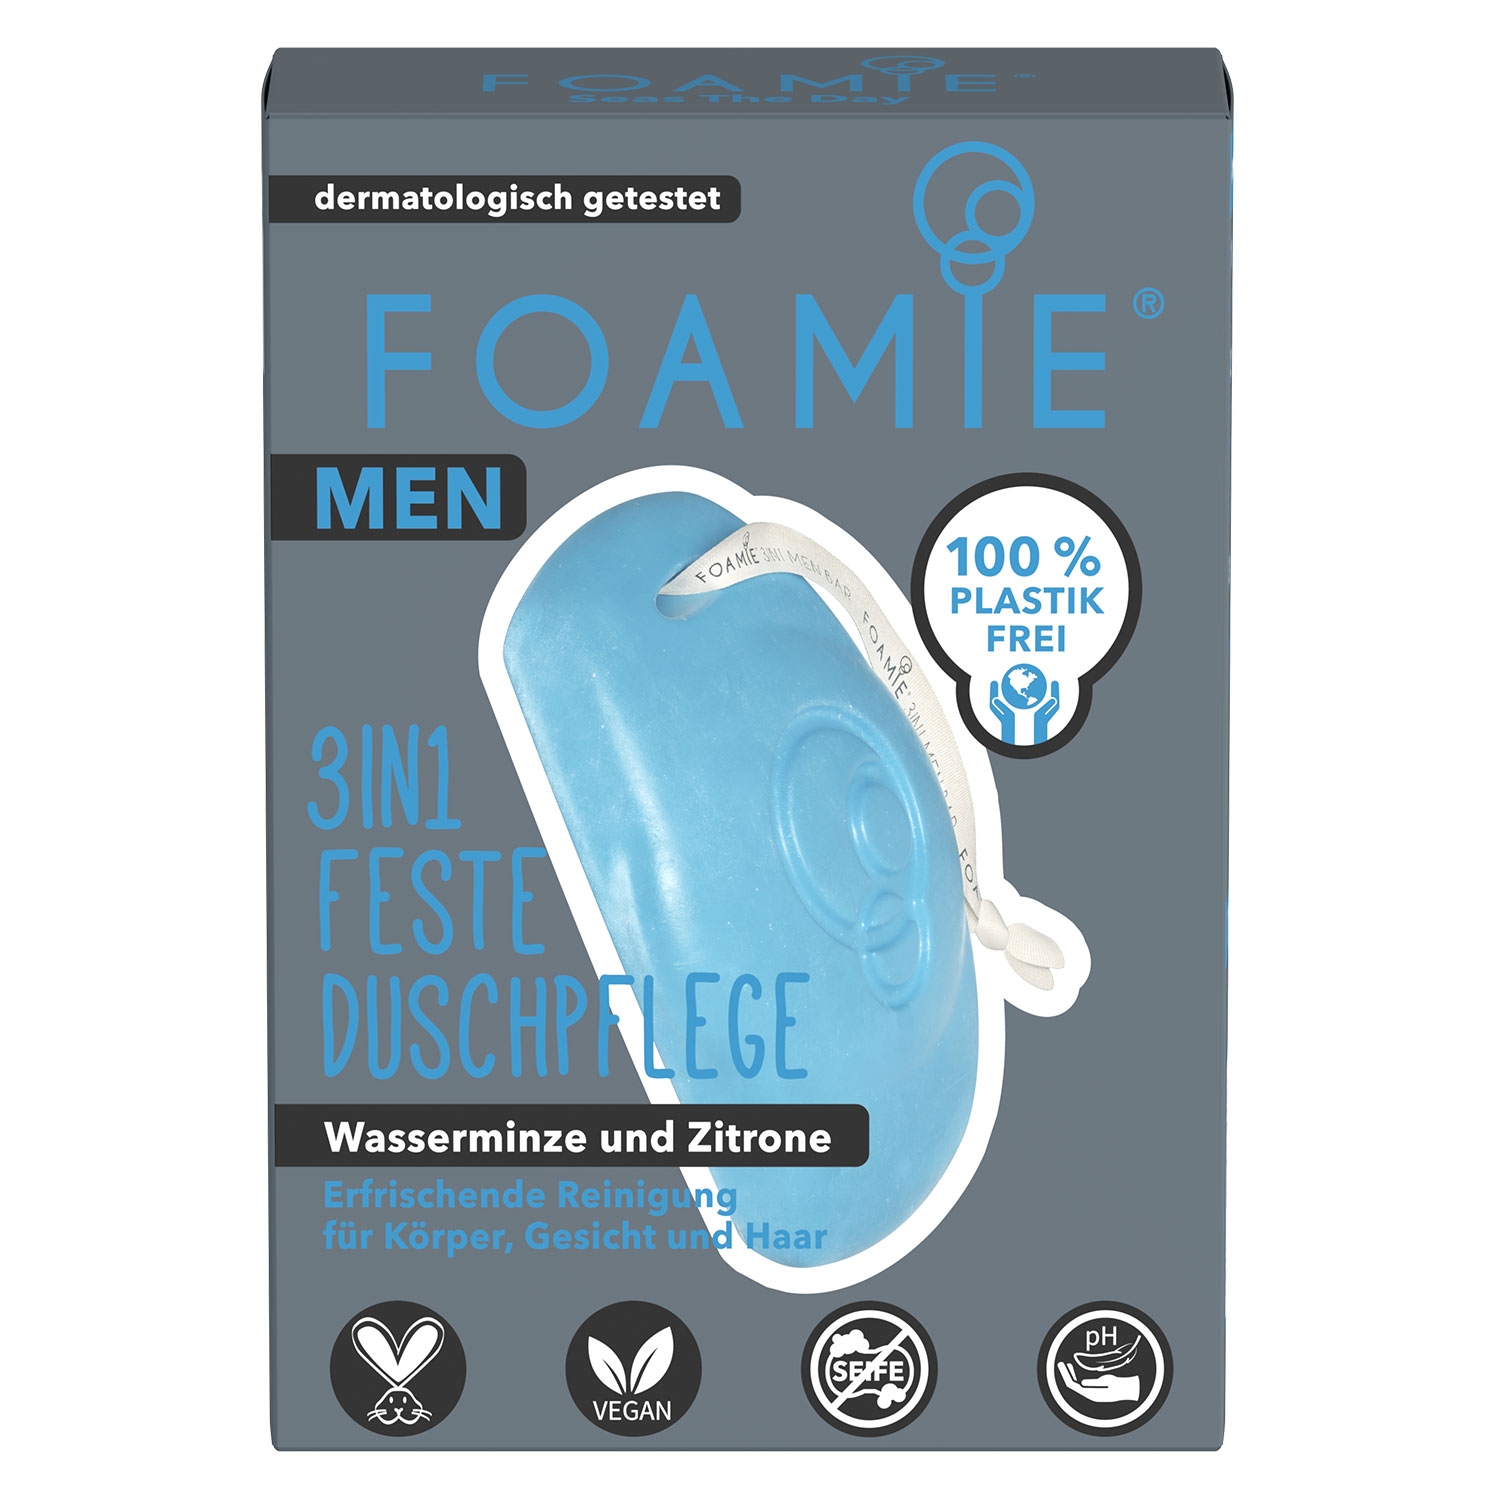 Product image from Foamie - Men 3in1 Feste Duschpflege Seas the Day